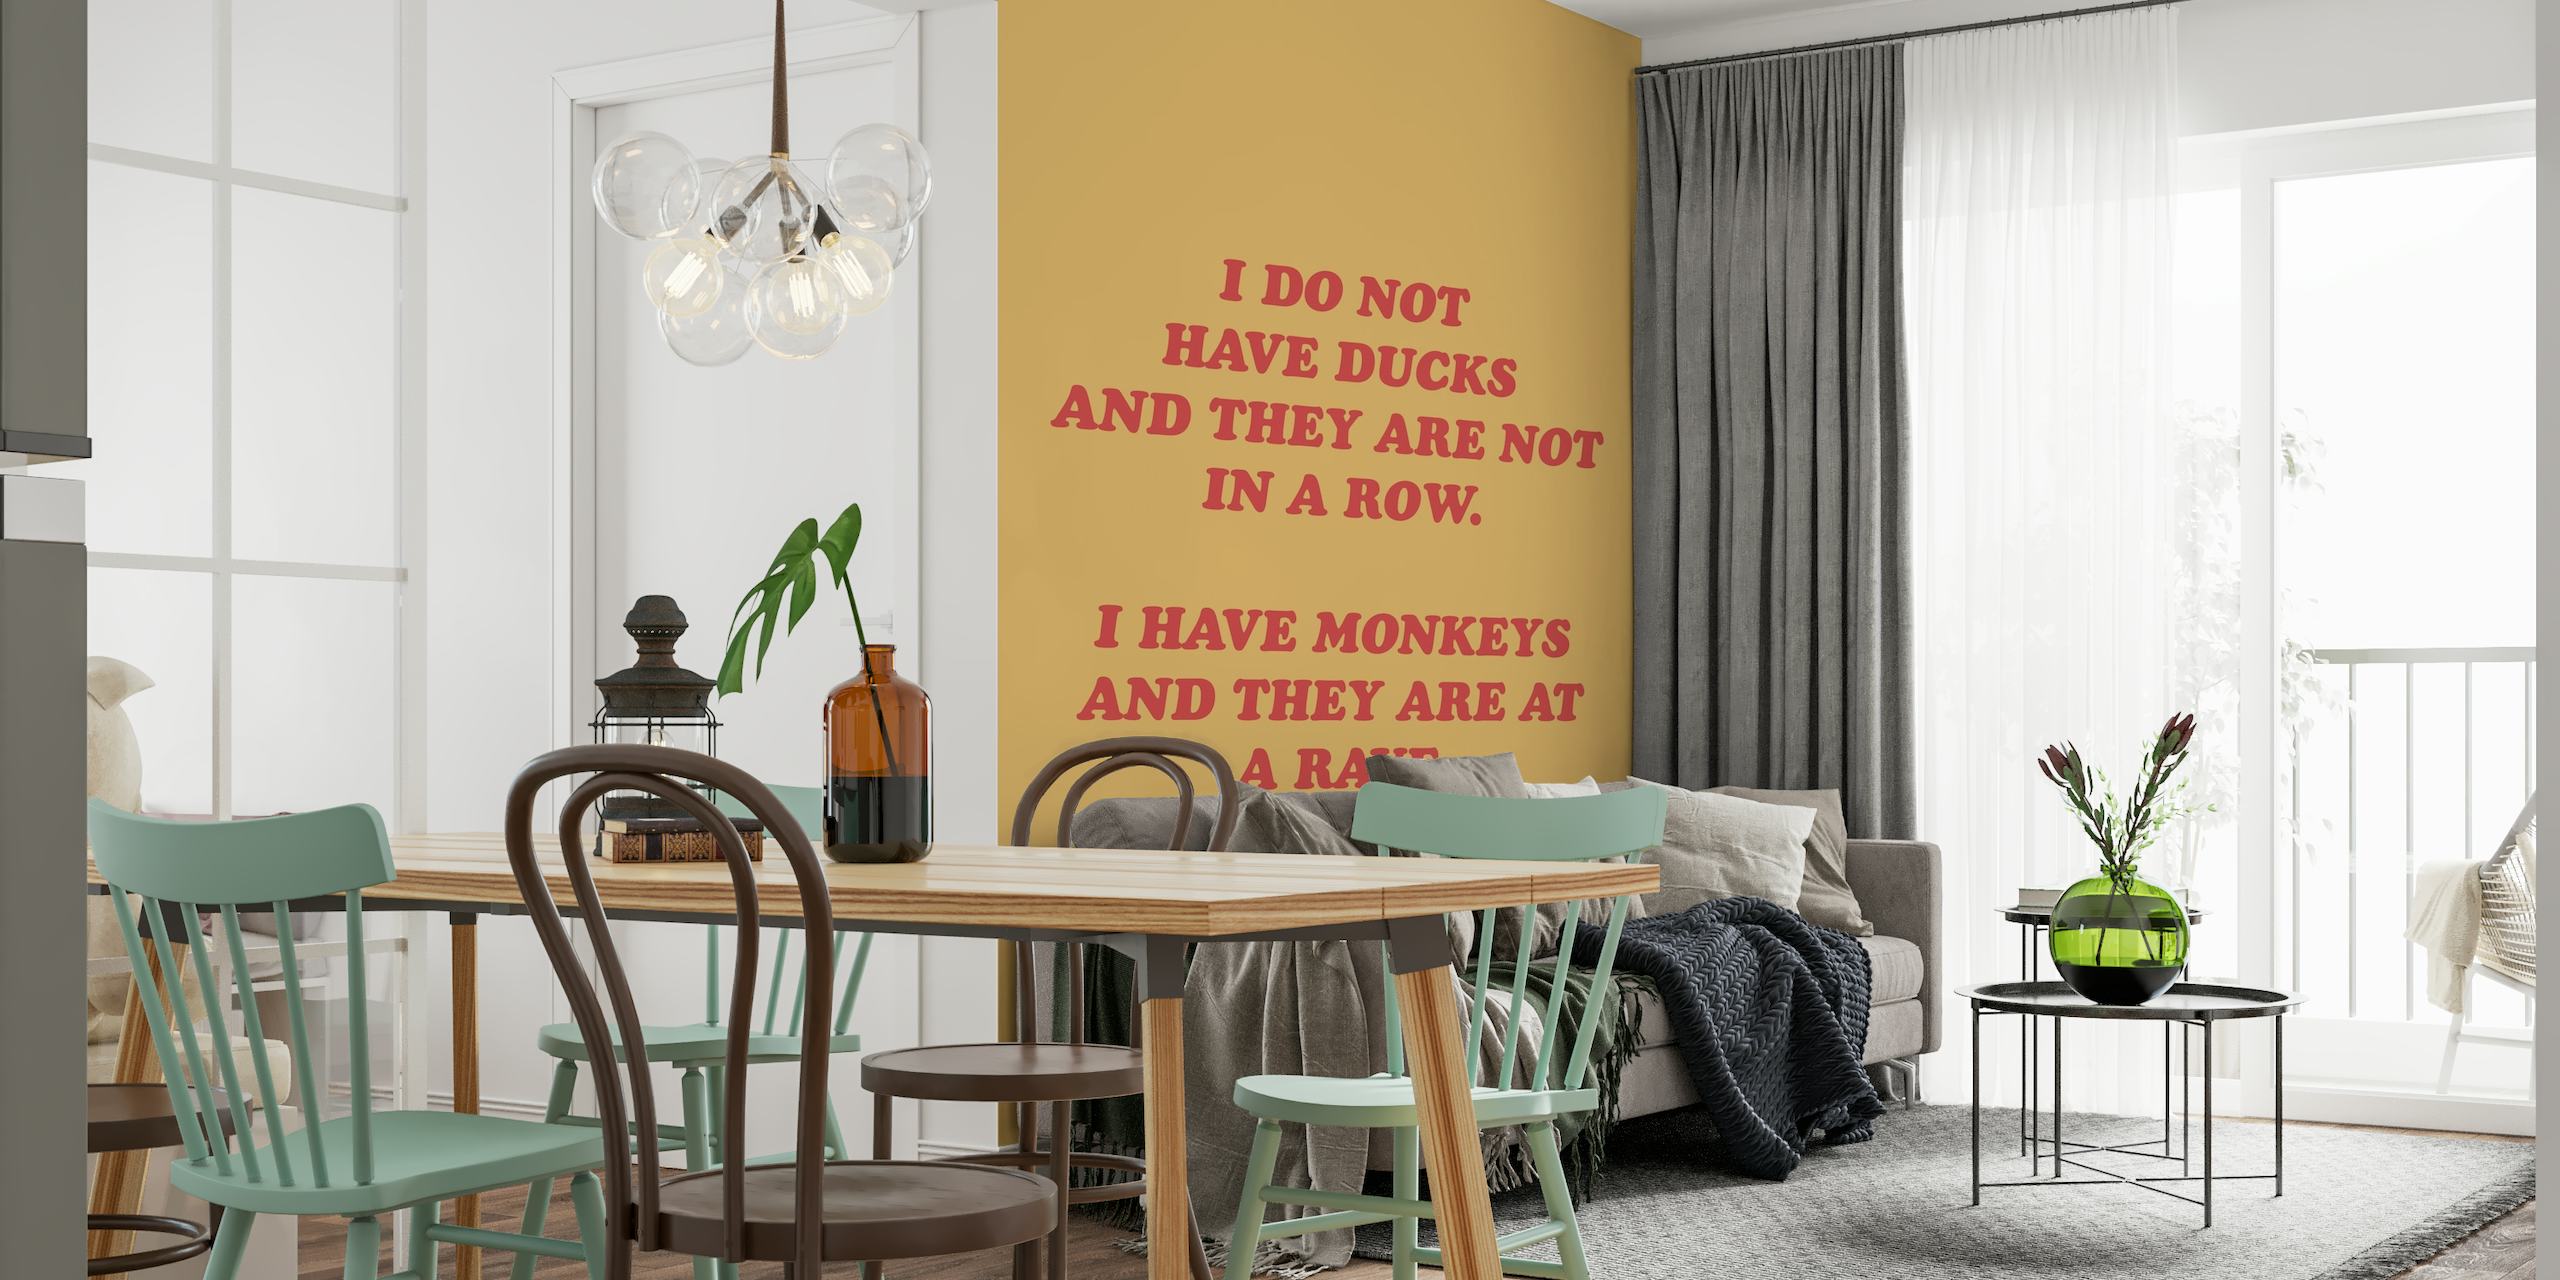 Monkeys and Ducks wallpaper